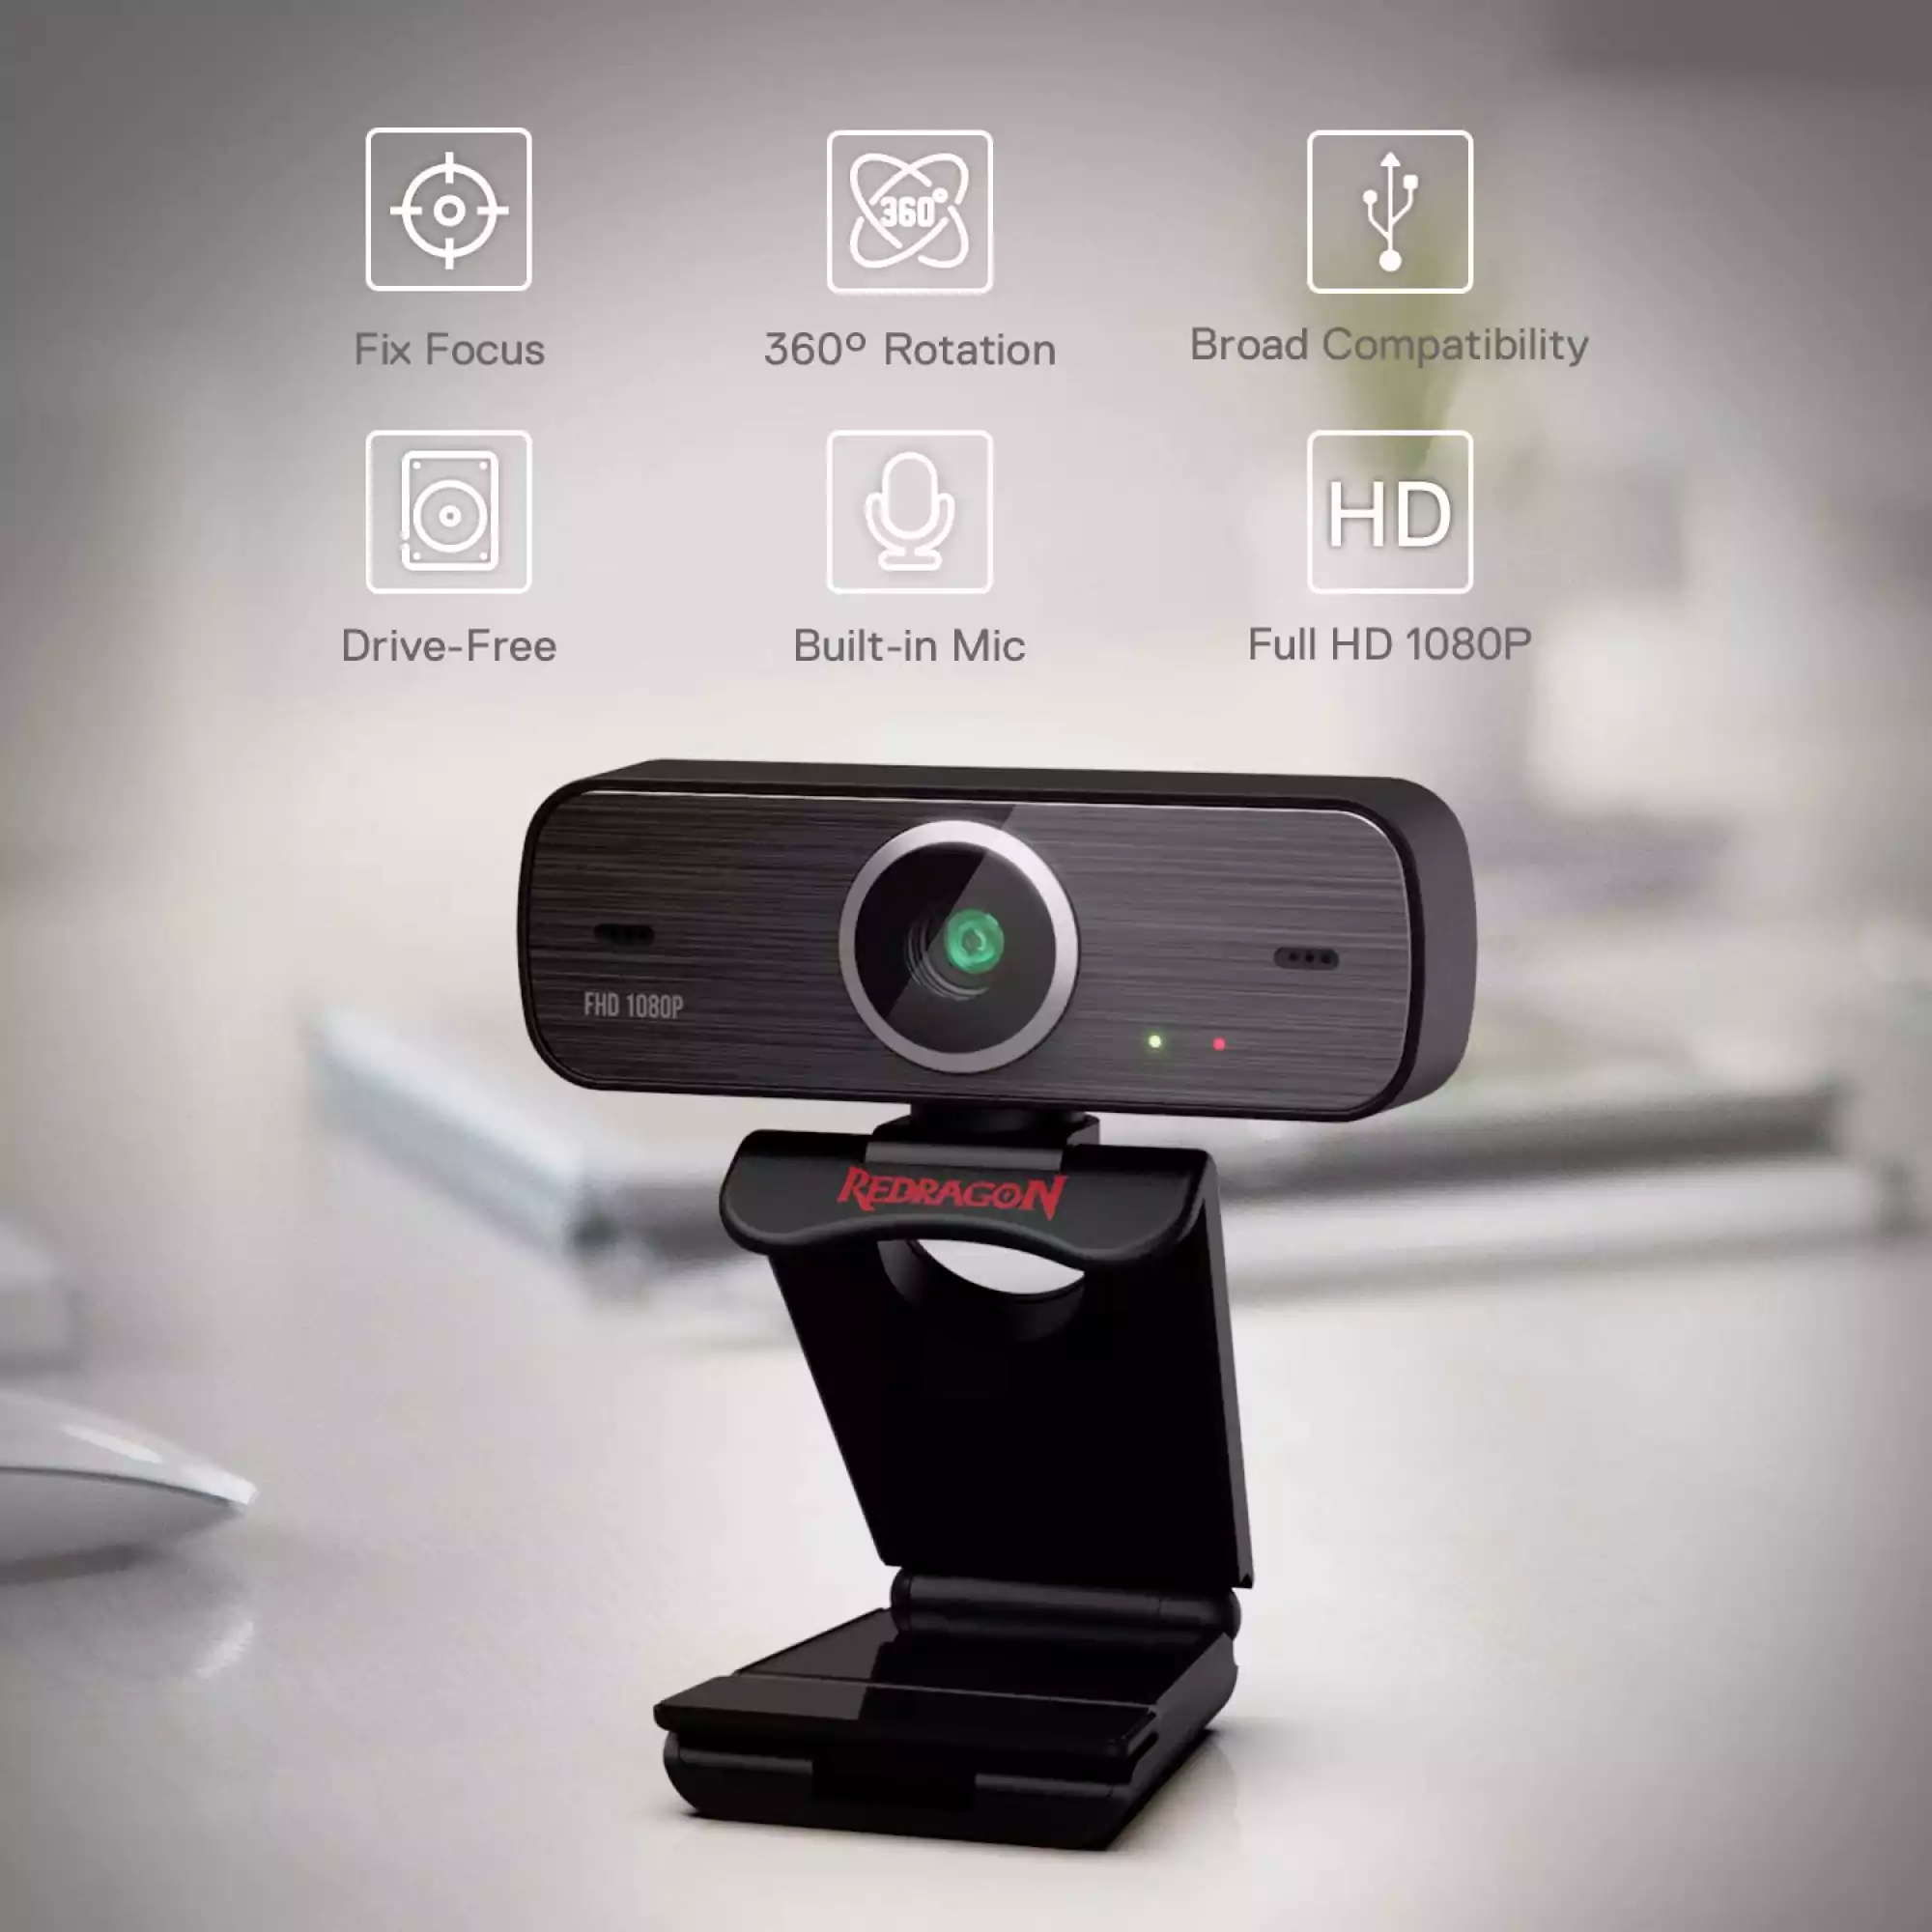 كاميرا ويب قابلة للدوران 360 درجة بميكروفون مزدوج مدمج ومنفذ USB 2 للسكايب والكمبيوتر هيتمان من ريدراجون GW800